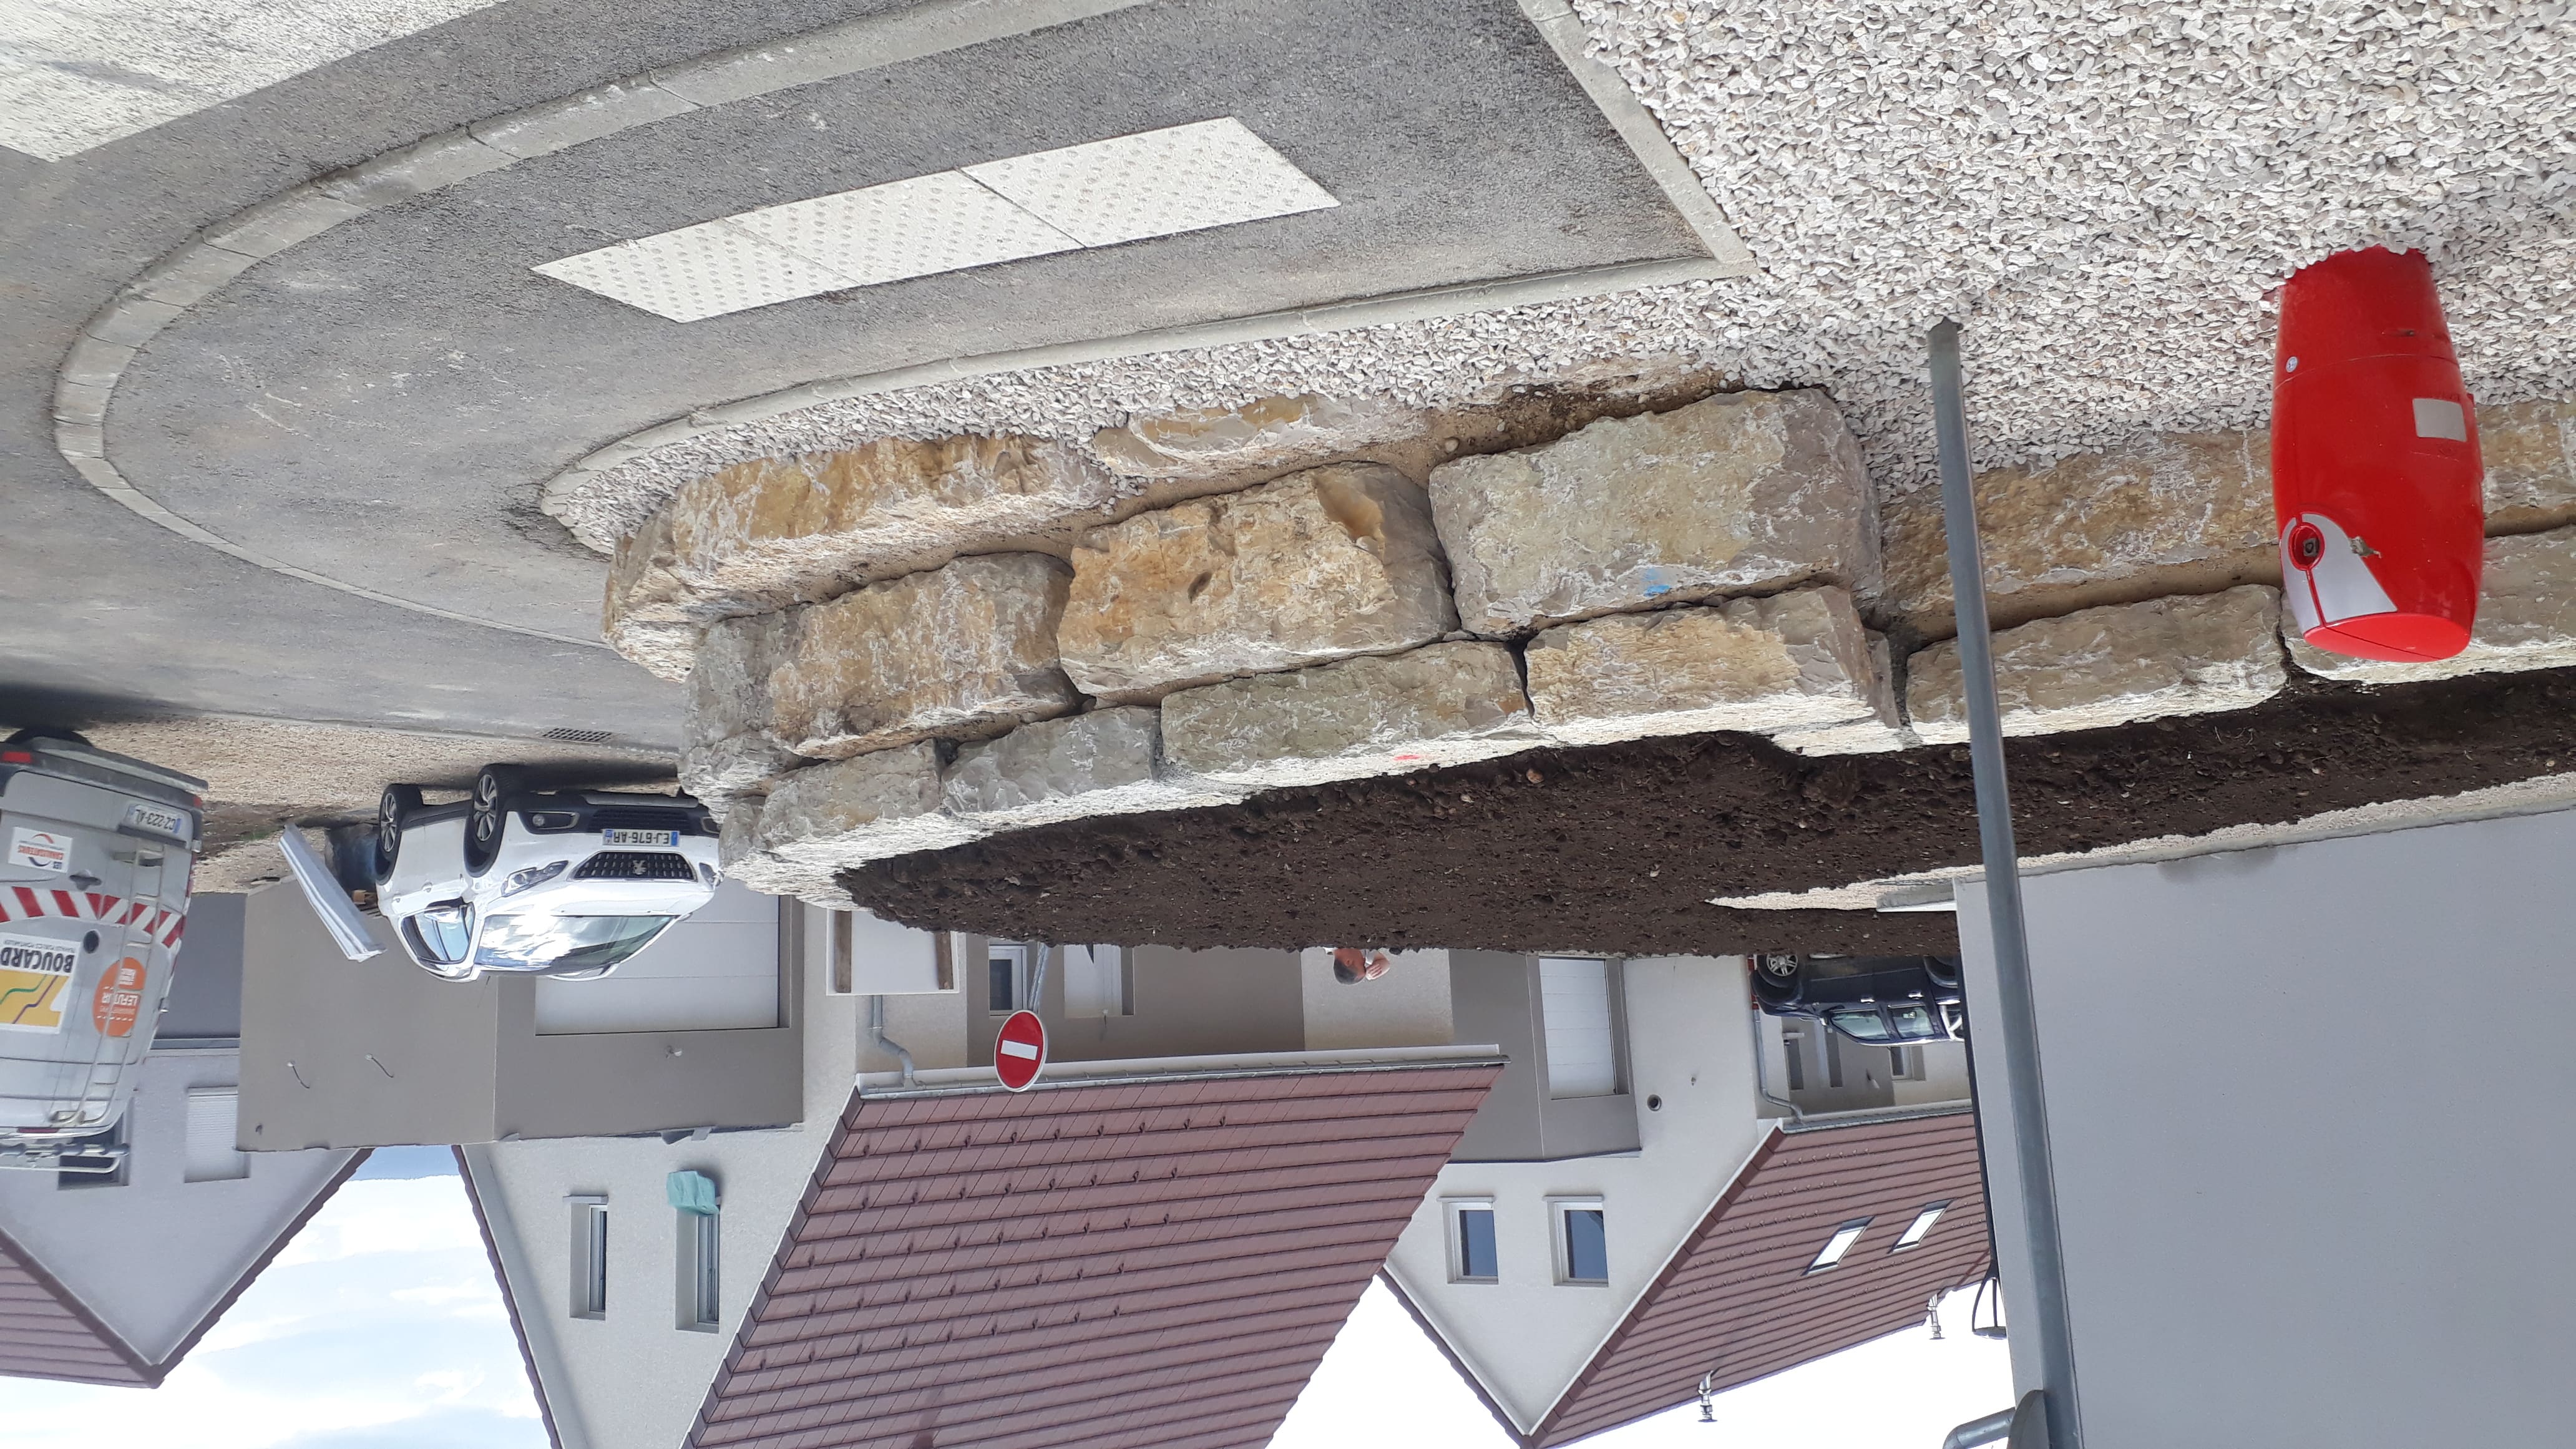 enrochement-mur-beton-terrasse-exterieur-maison-travaux-publics-TP-pontarlier-doubs-franche-comte-04